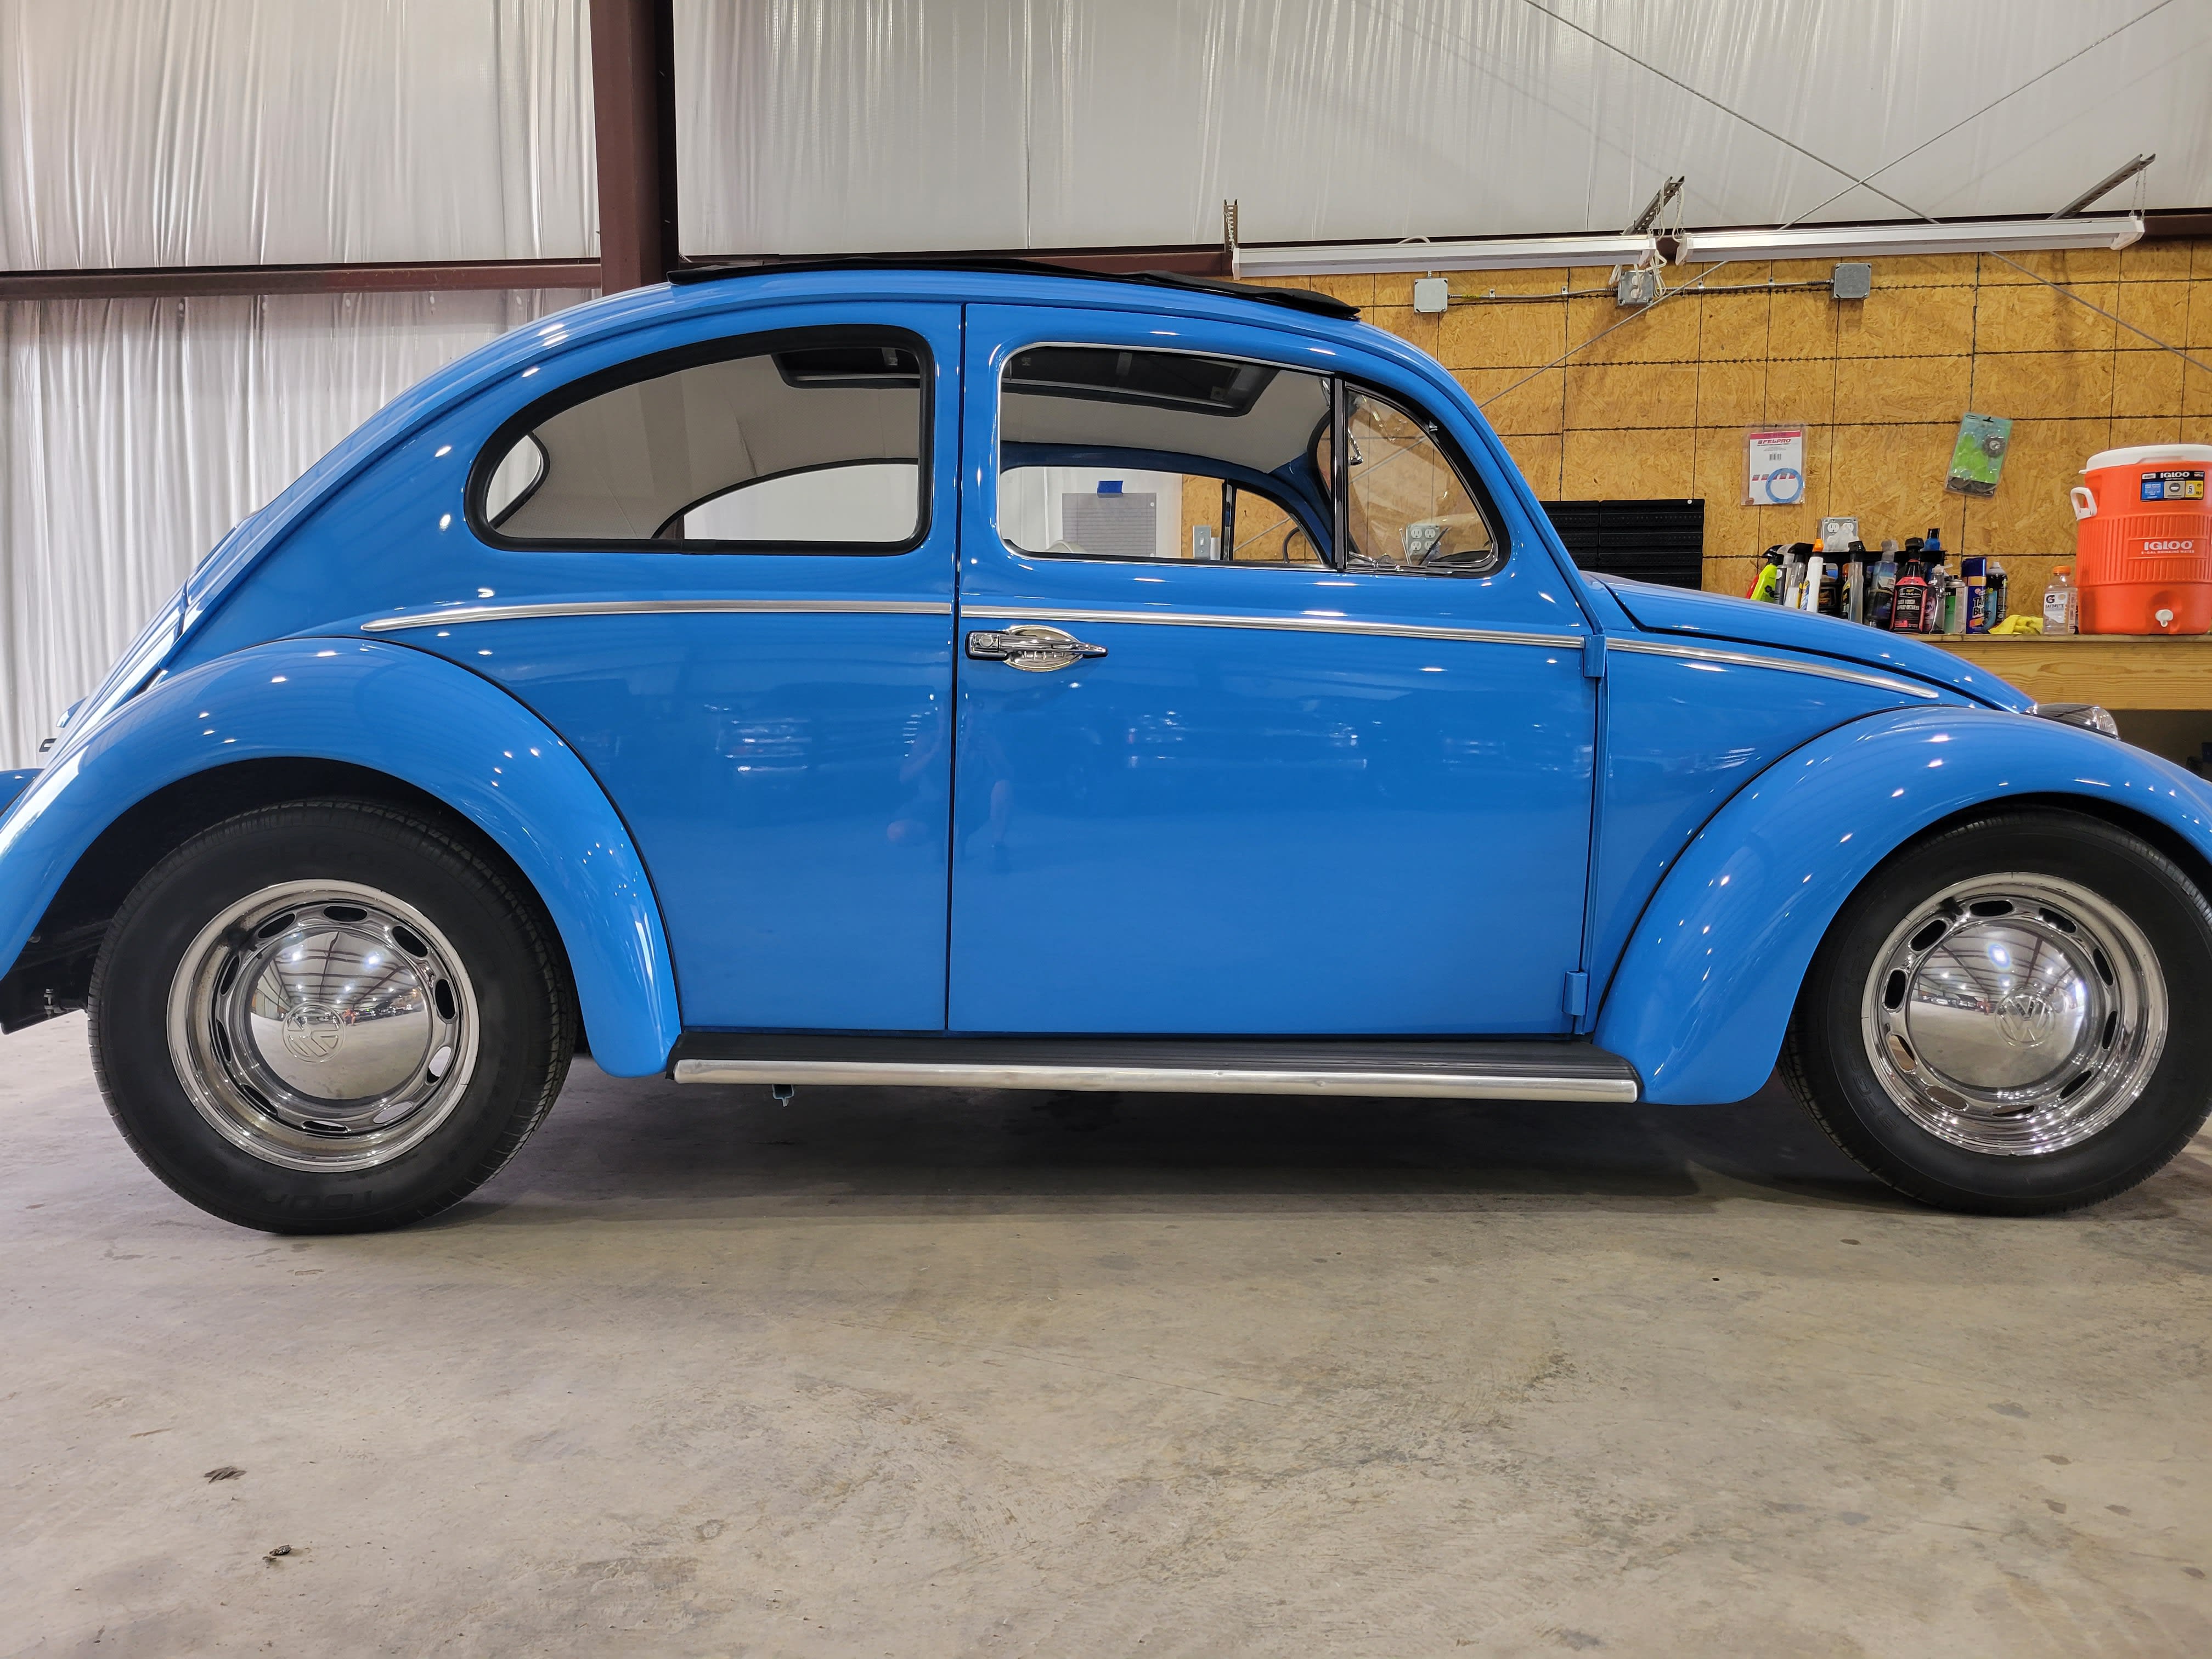 1960 Volkswagen Beetle  Art & Speed Classic Car Gallery in